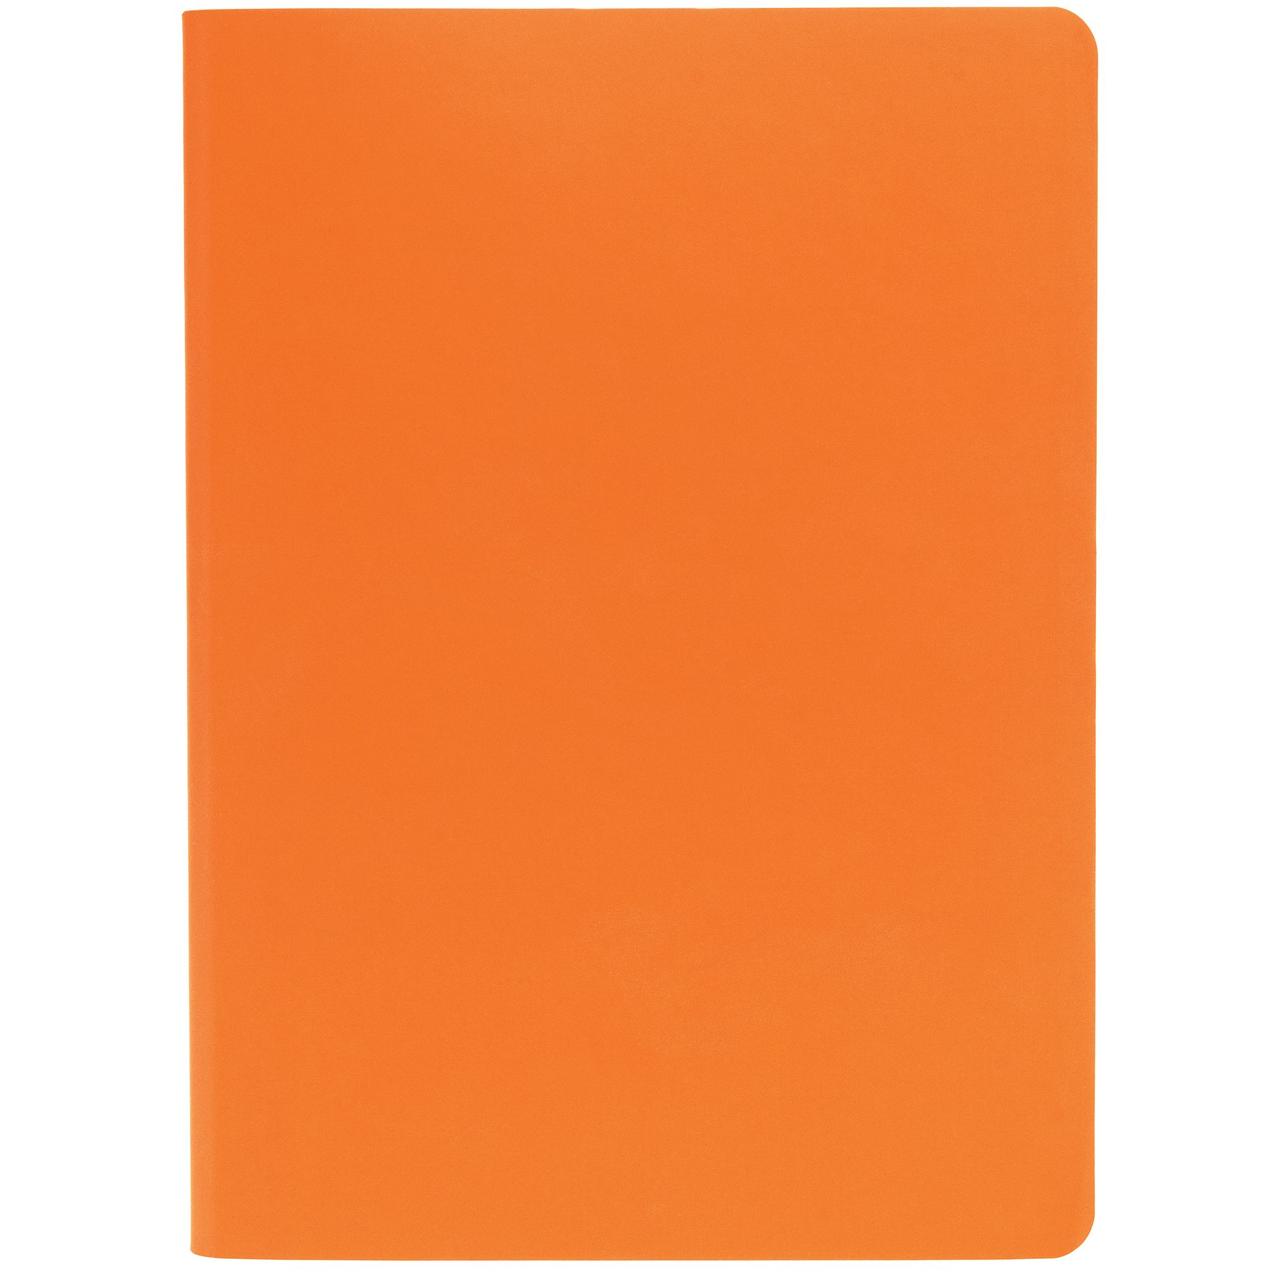 Ежедневник Flex Shall, датированный, оранжевый (артикул 17881.20)